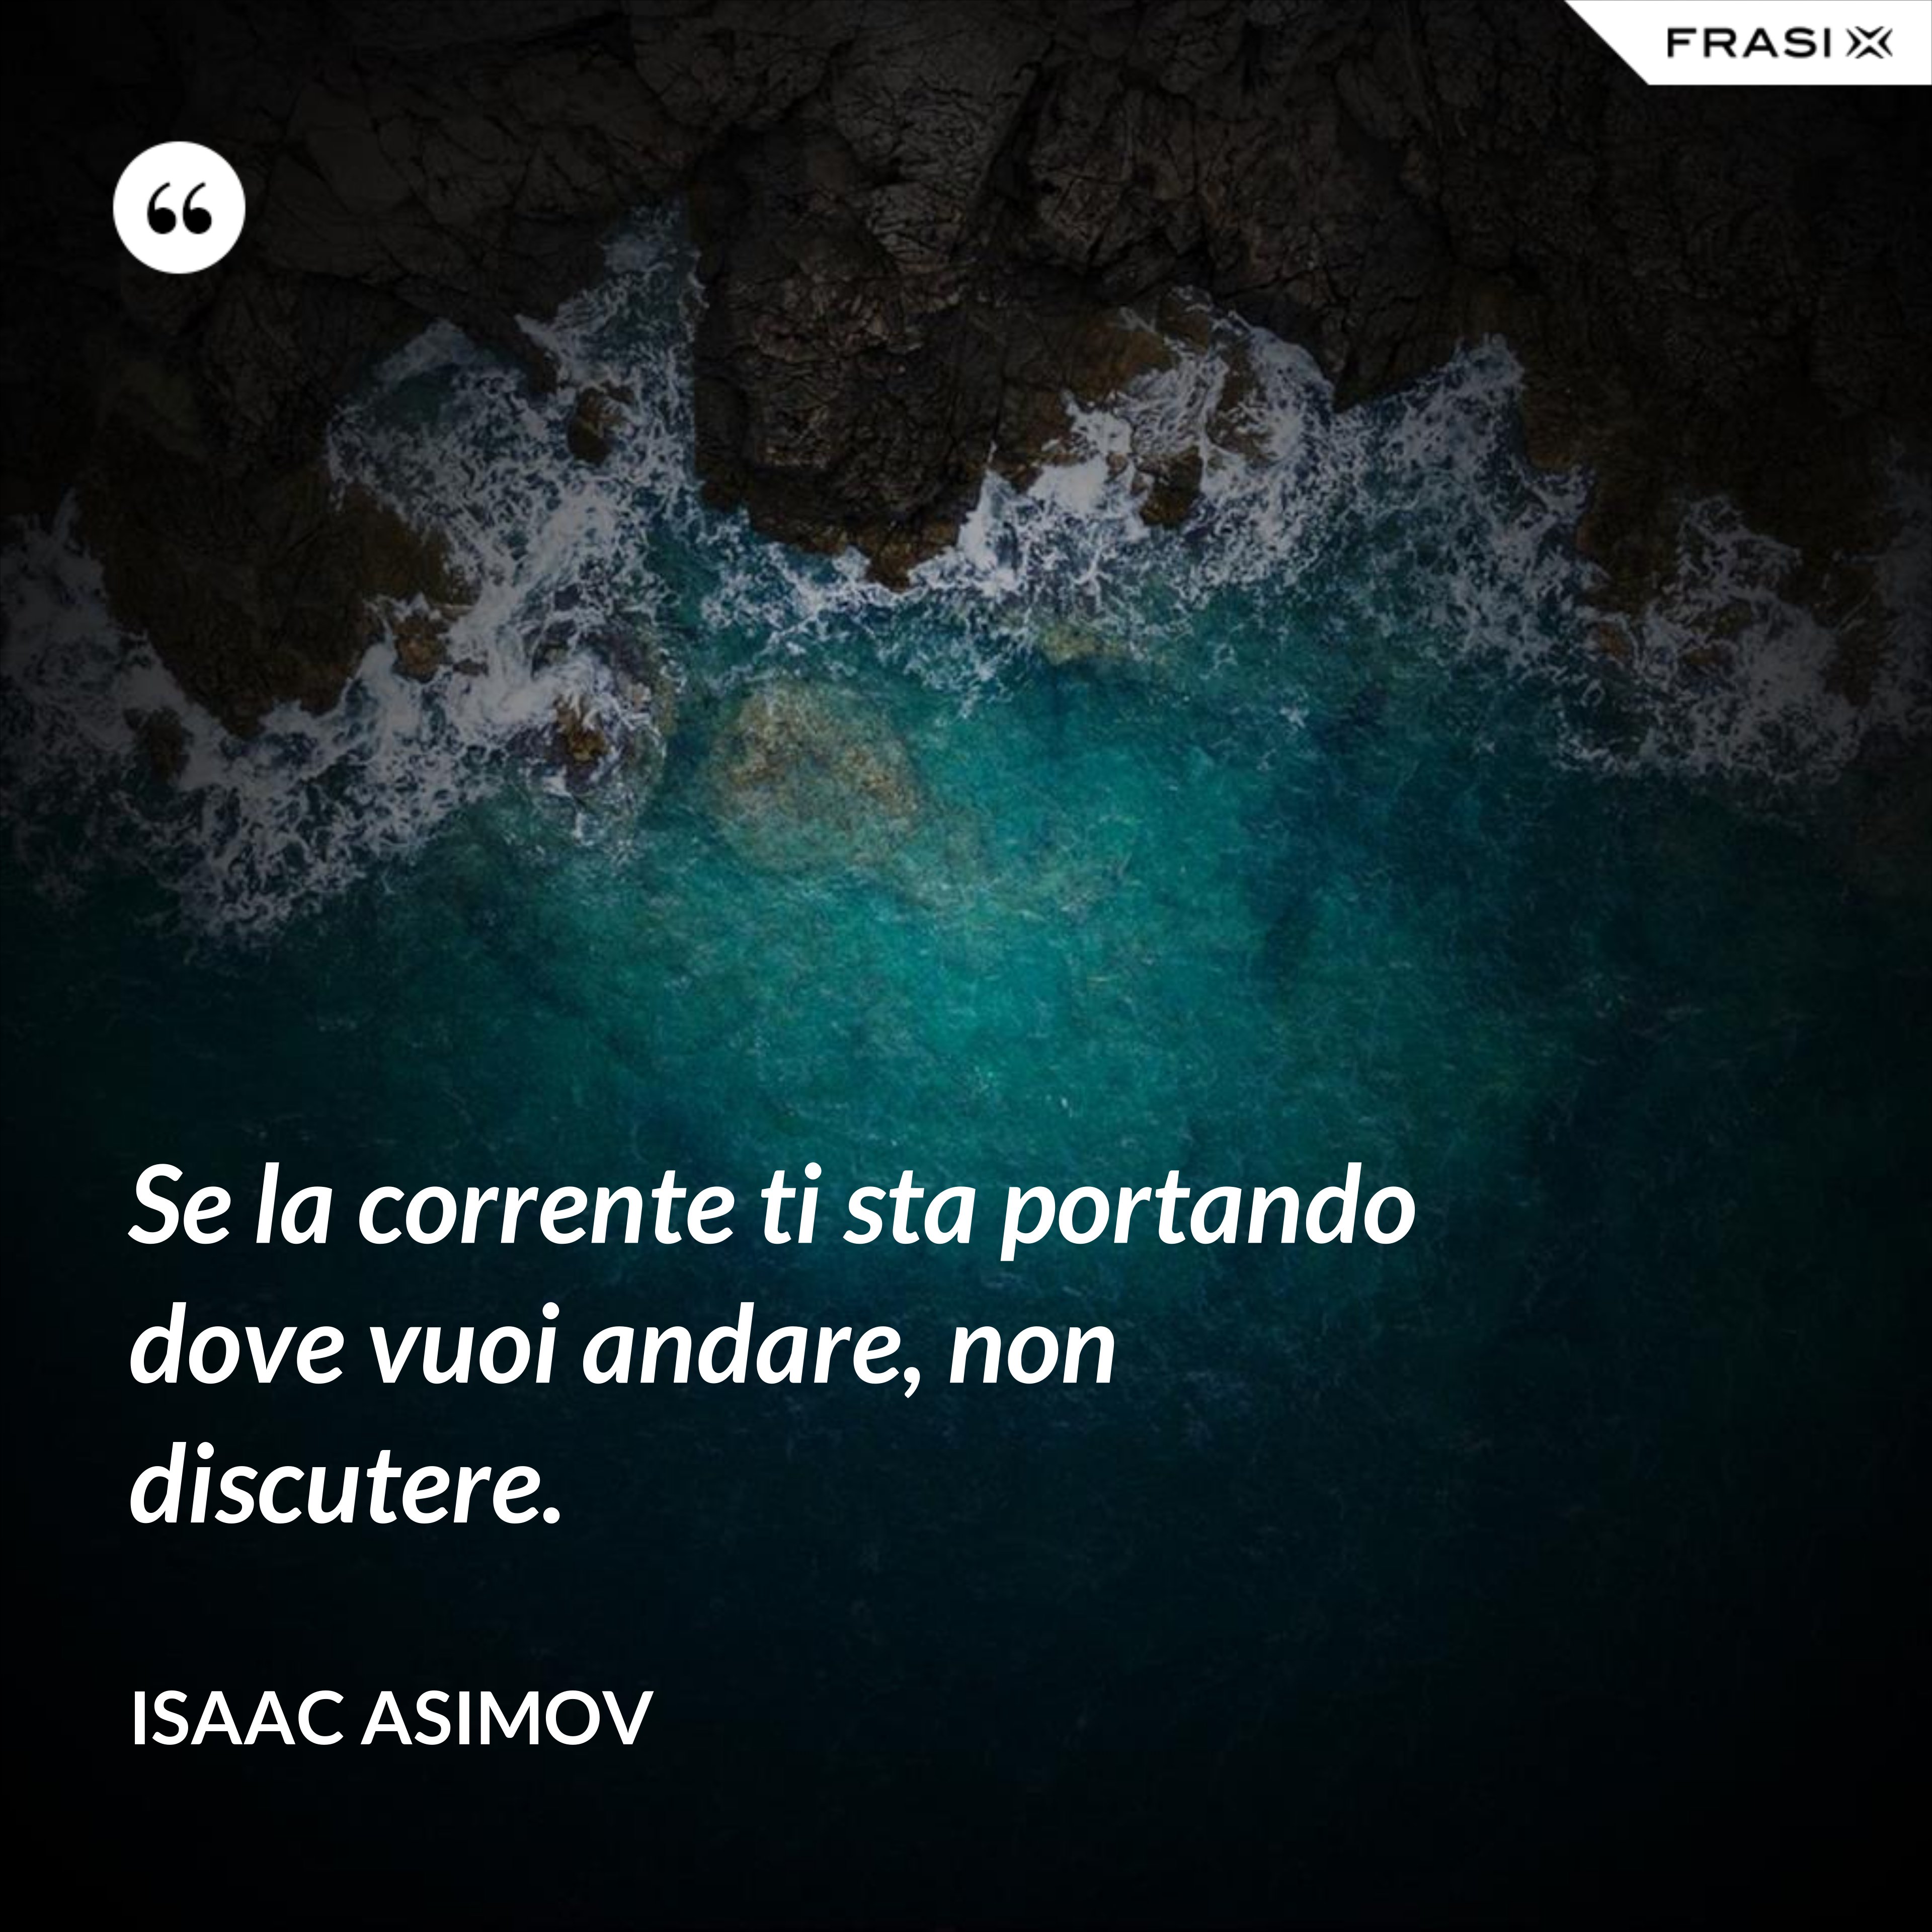 Se la corrente ti sta portando dove vuoi andare, non discutere. - Isaac Asimov